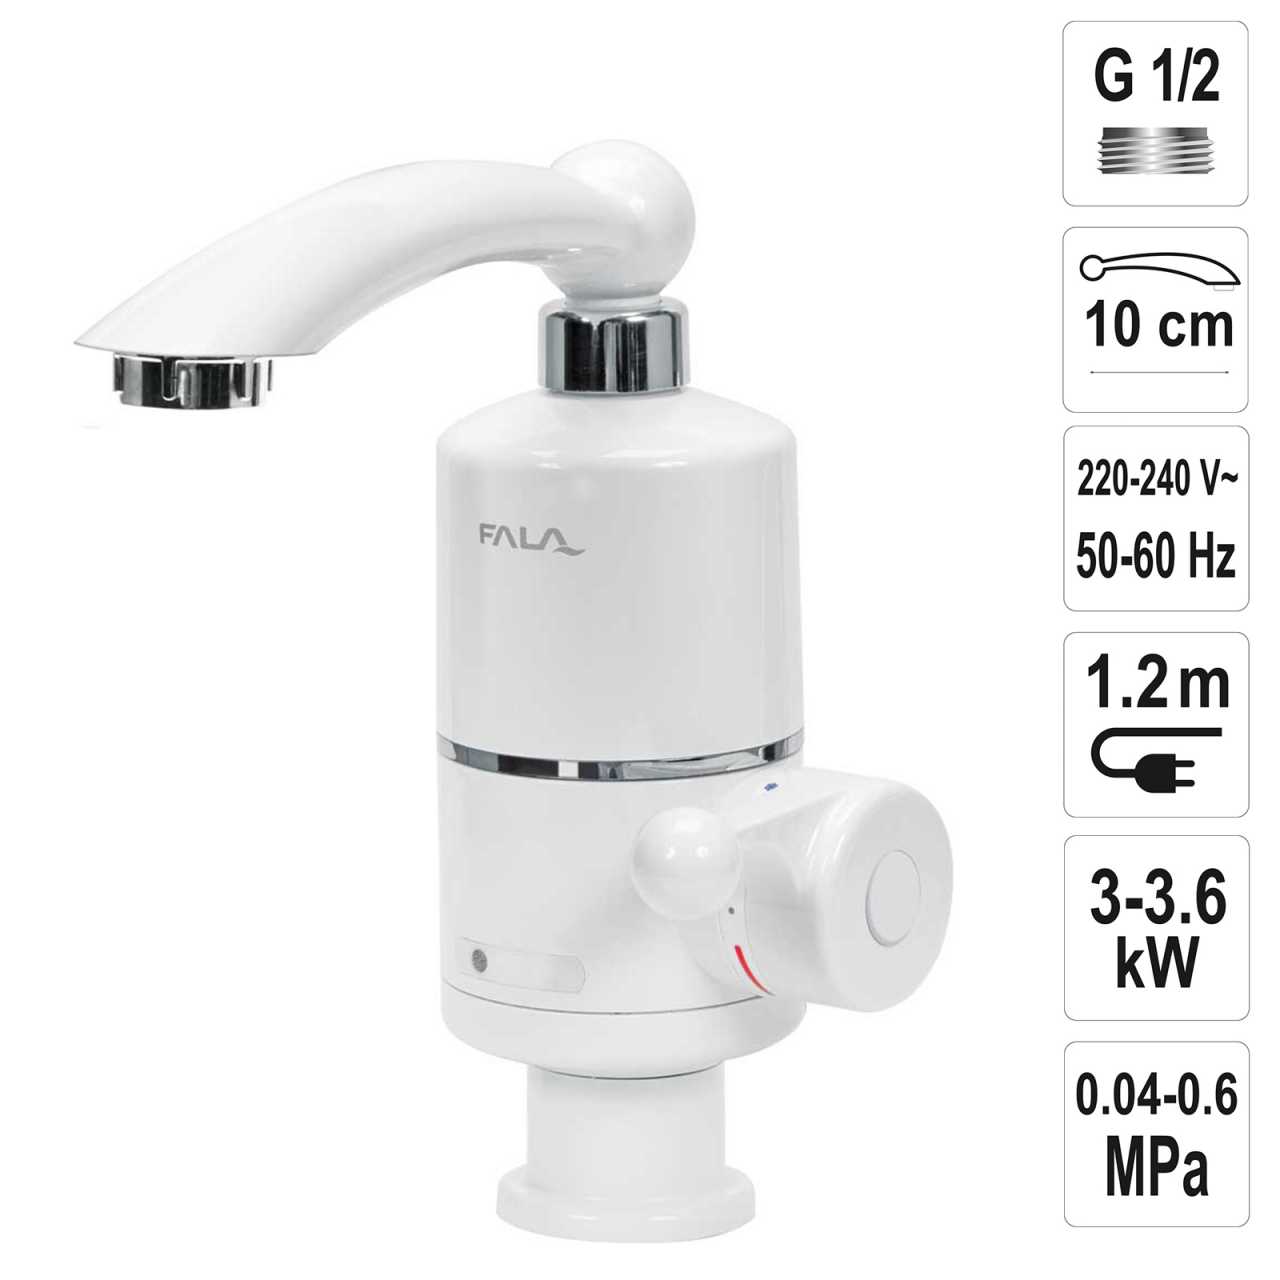 Fala Wasserhahn Durchlauferhitzer (Waschtischmontage) 3KW 75931